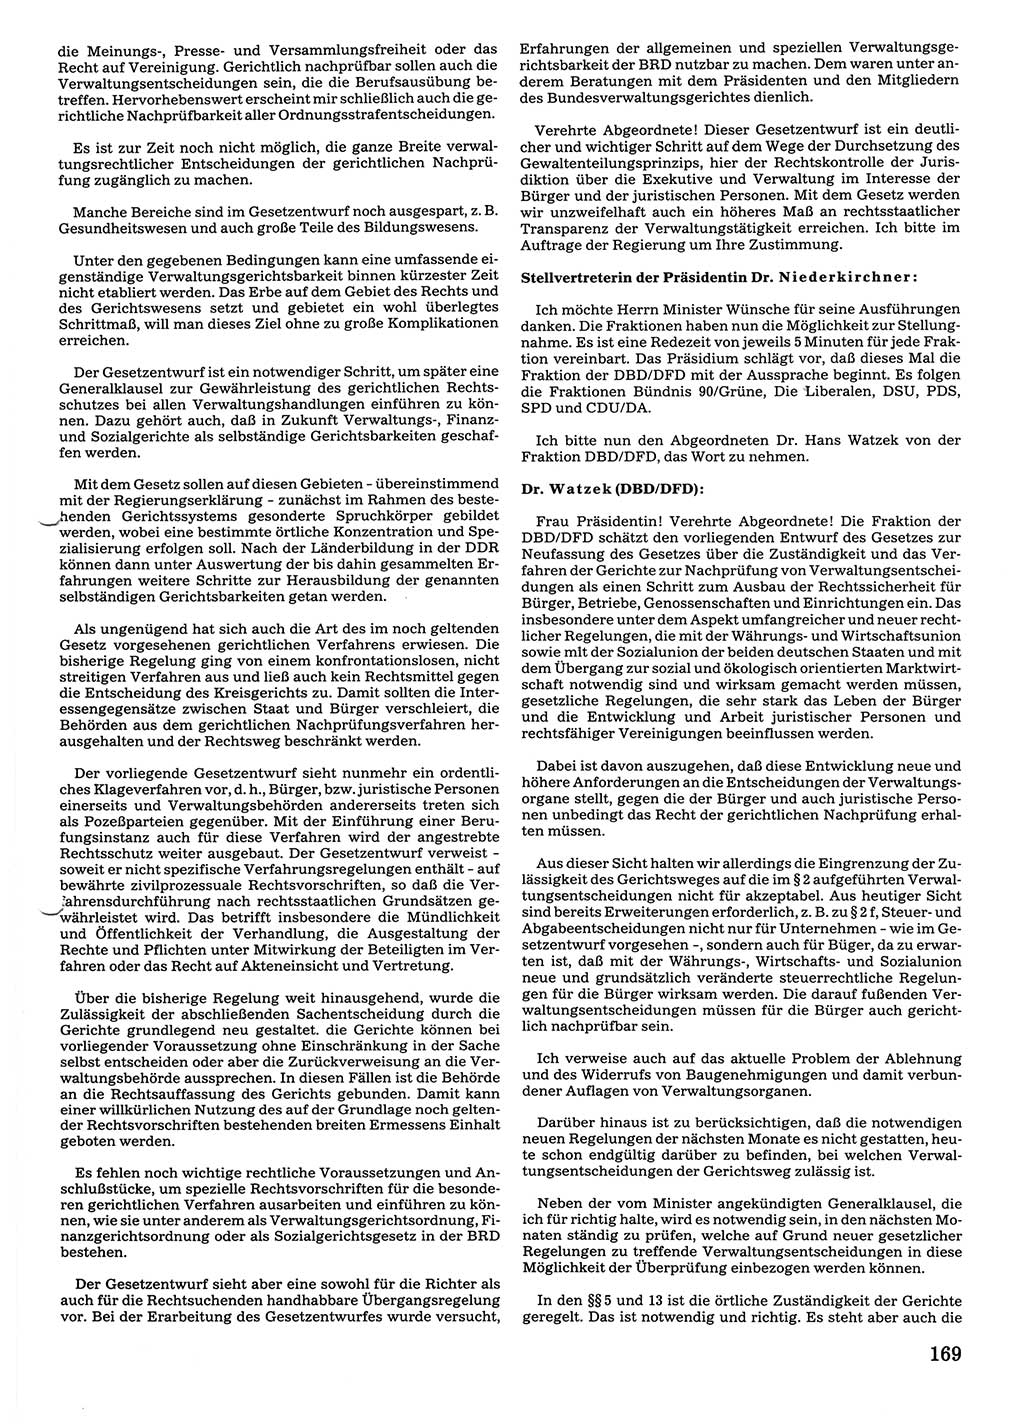 Tagungen der Volkskammer (VK) der Deutschen Demokratischen Republik (DDR), 10. Wahlperiode 1990, Seite 169 (VK. DDR 10. WP. 1990, Prot. Tg. 1-38, 5.4.-2.10.1990, S. 169)